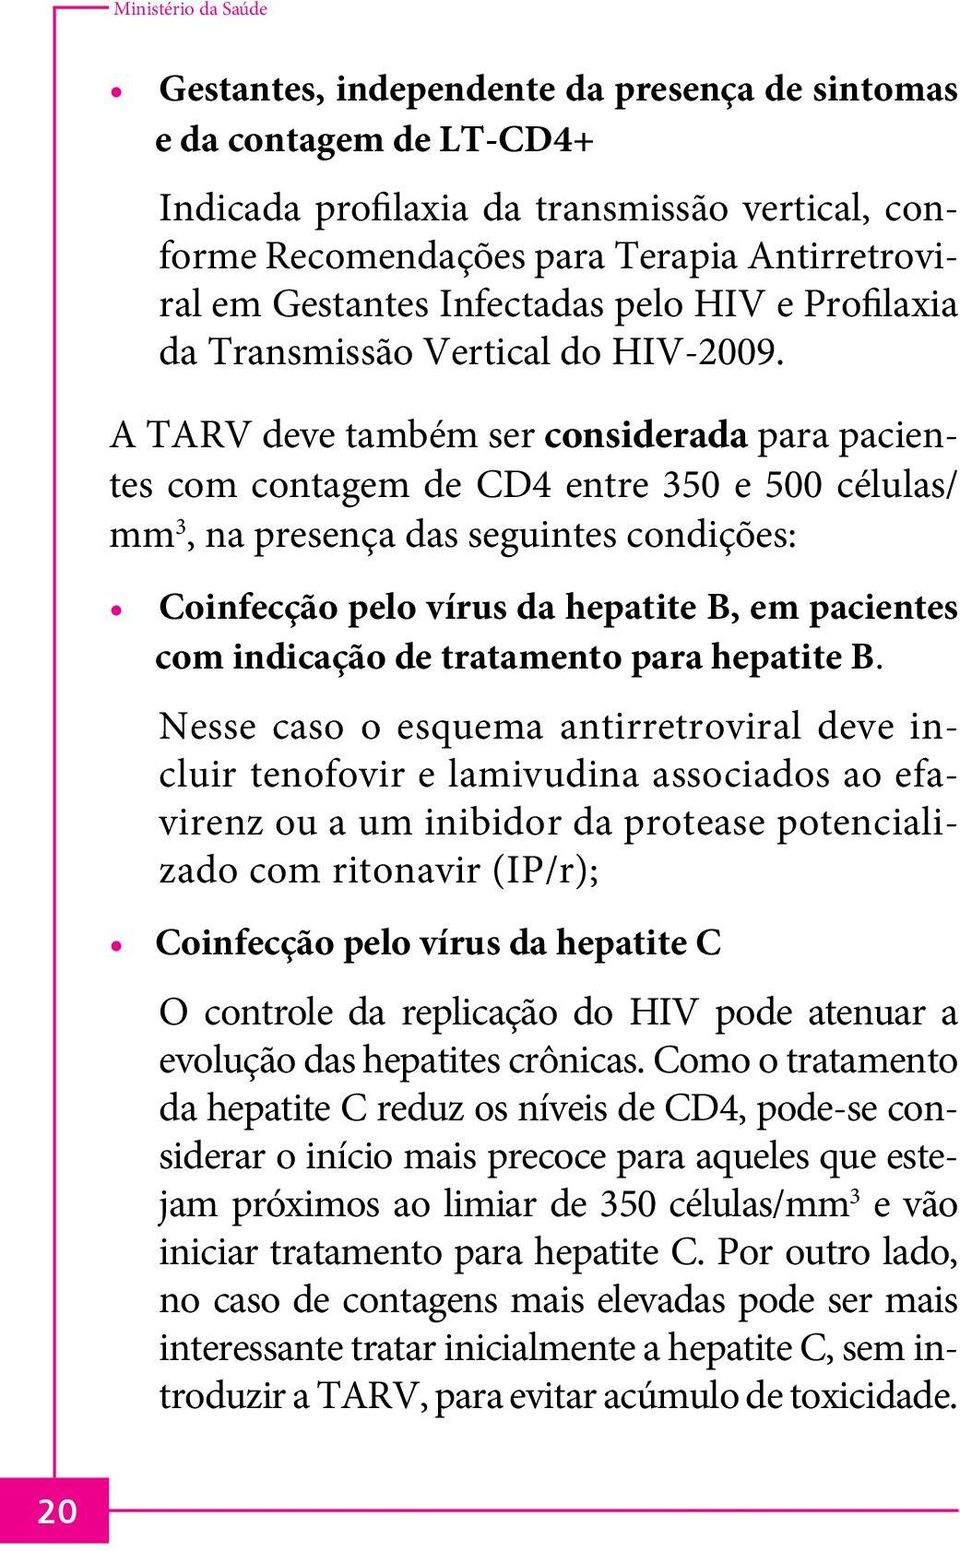 A TARV deve também ser considerada para pacientes com contagem de CD4 entre 350 e 500 células/ mm 3, na presença das seguintes condições: Coinfecção pelo vírus da hepatite B, em pacientes com